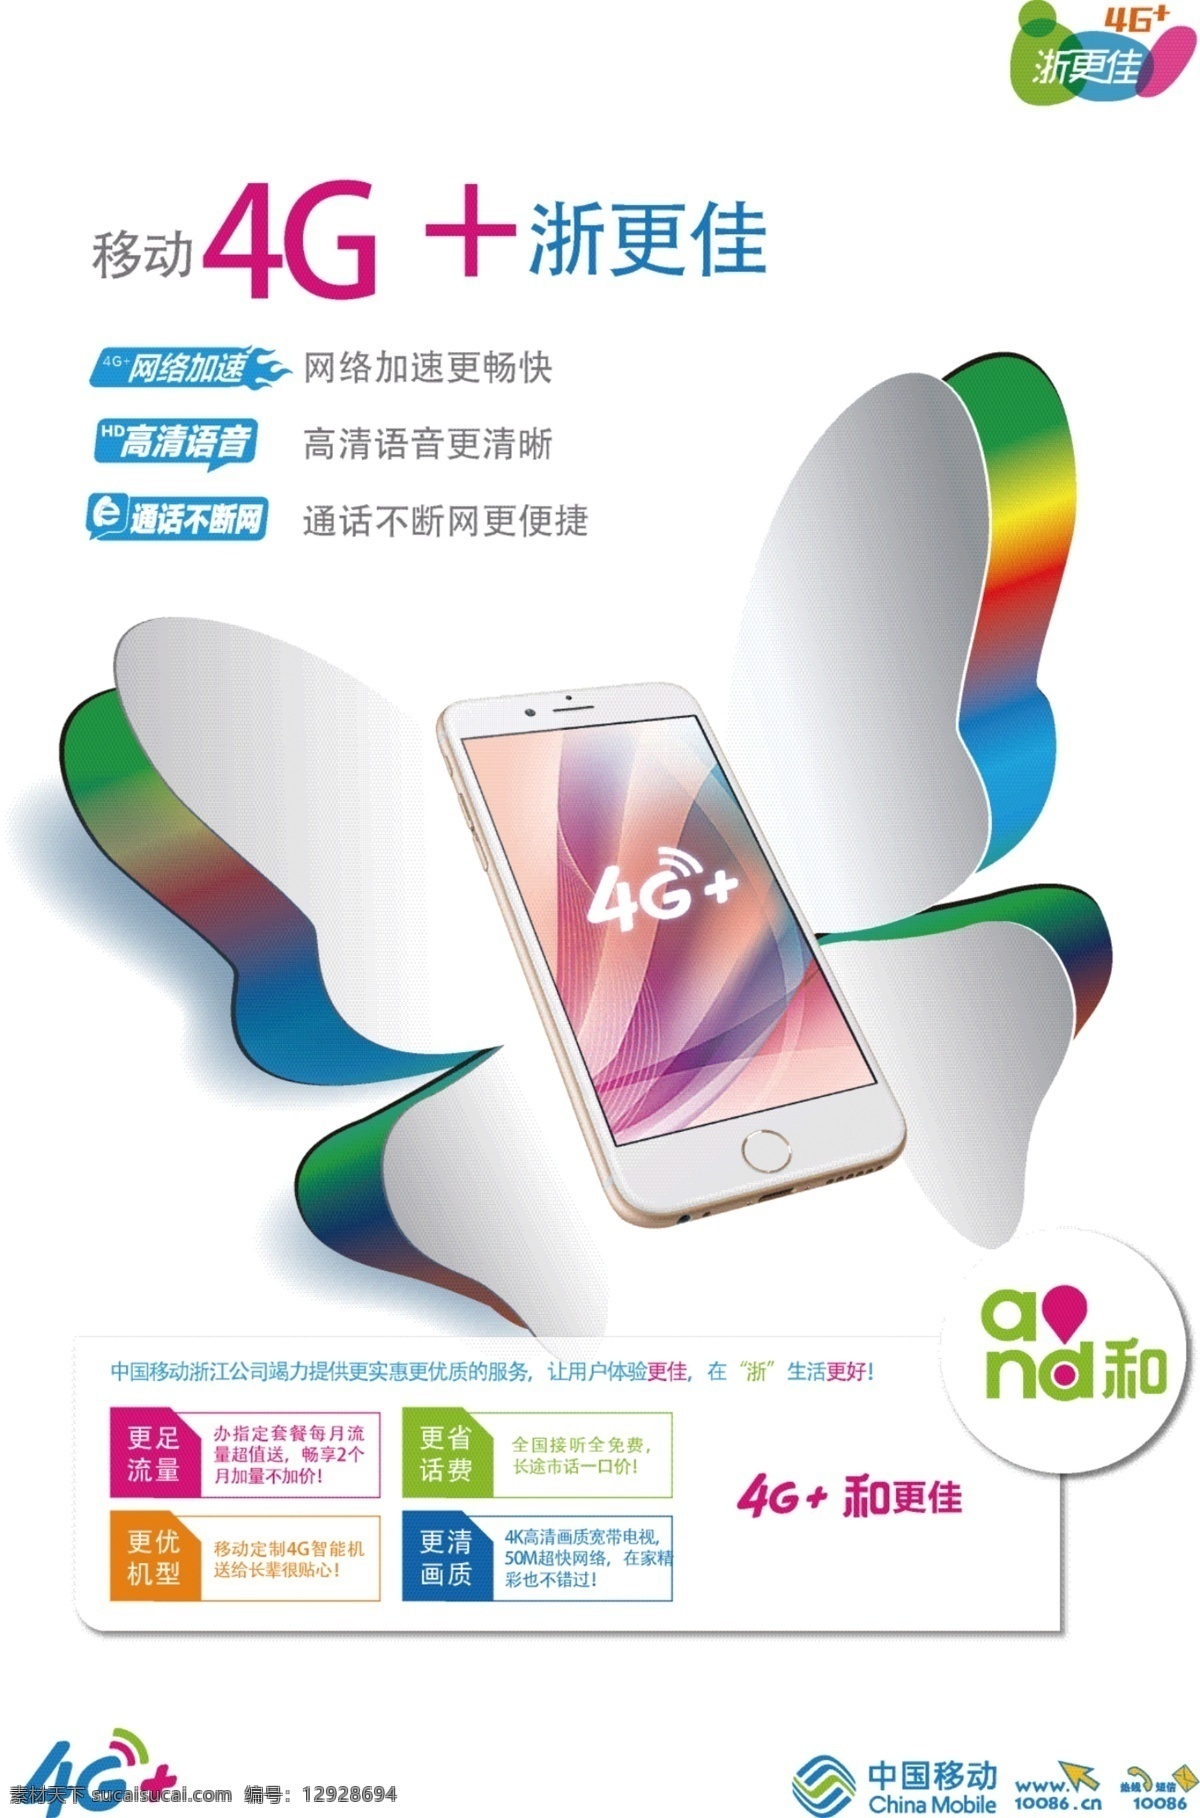 移动4g海报 中国移动 蝴蝶 造型 4g 网络加速 高清语音 彩虹色 iphone 手机